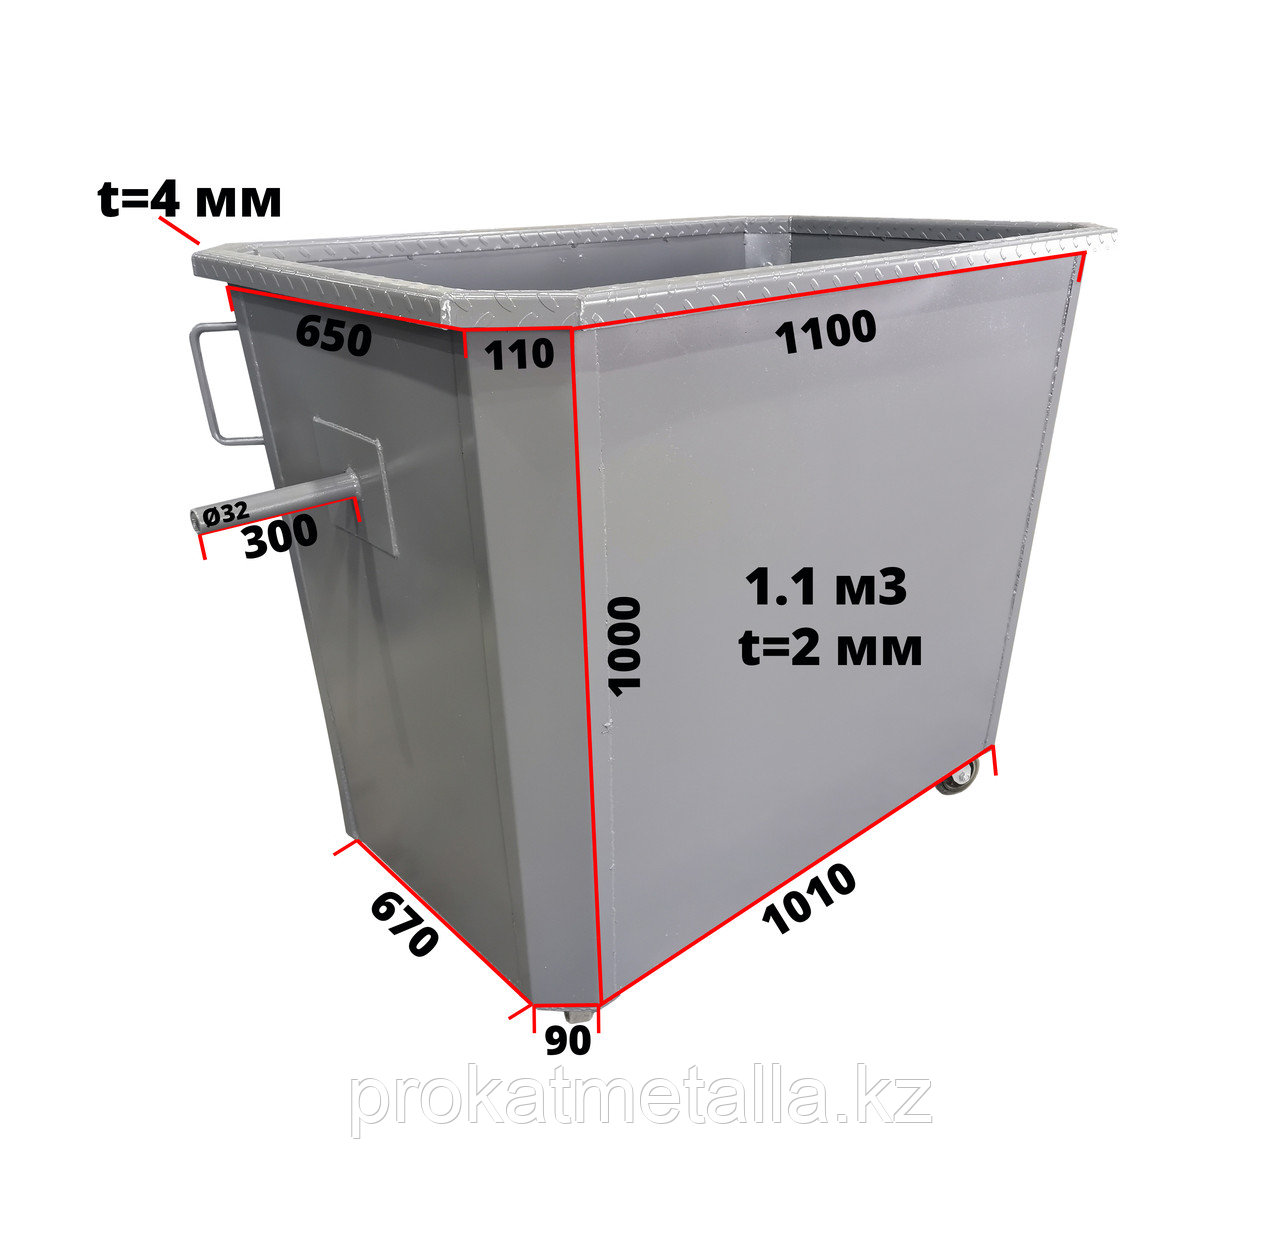 Мусорный контейнер 1.1 м3 (толщина 2 мм): узнать цену и заказать в .